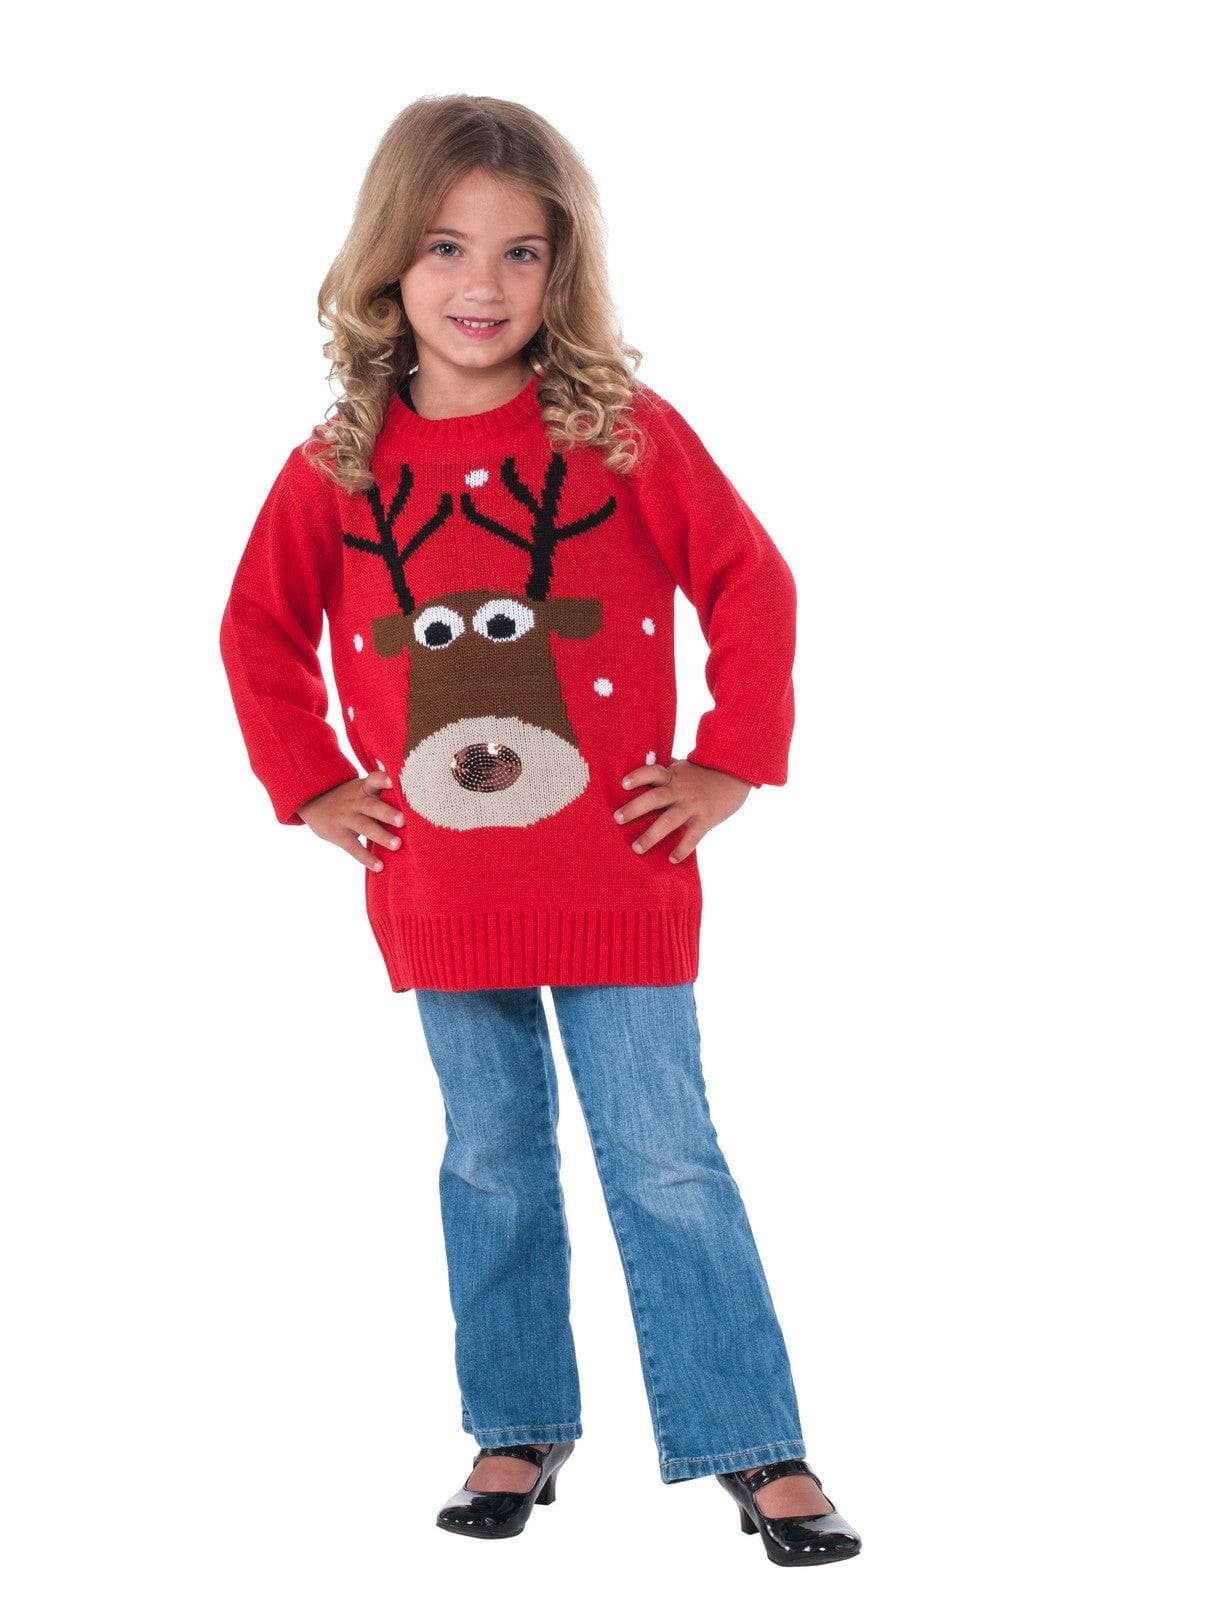 Kids Reindeer Sweater - costumes.com